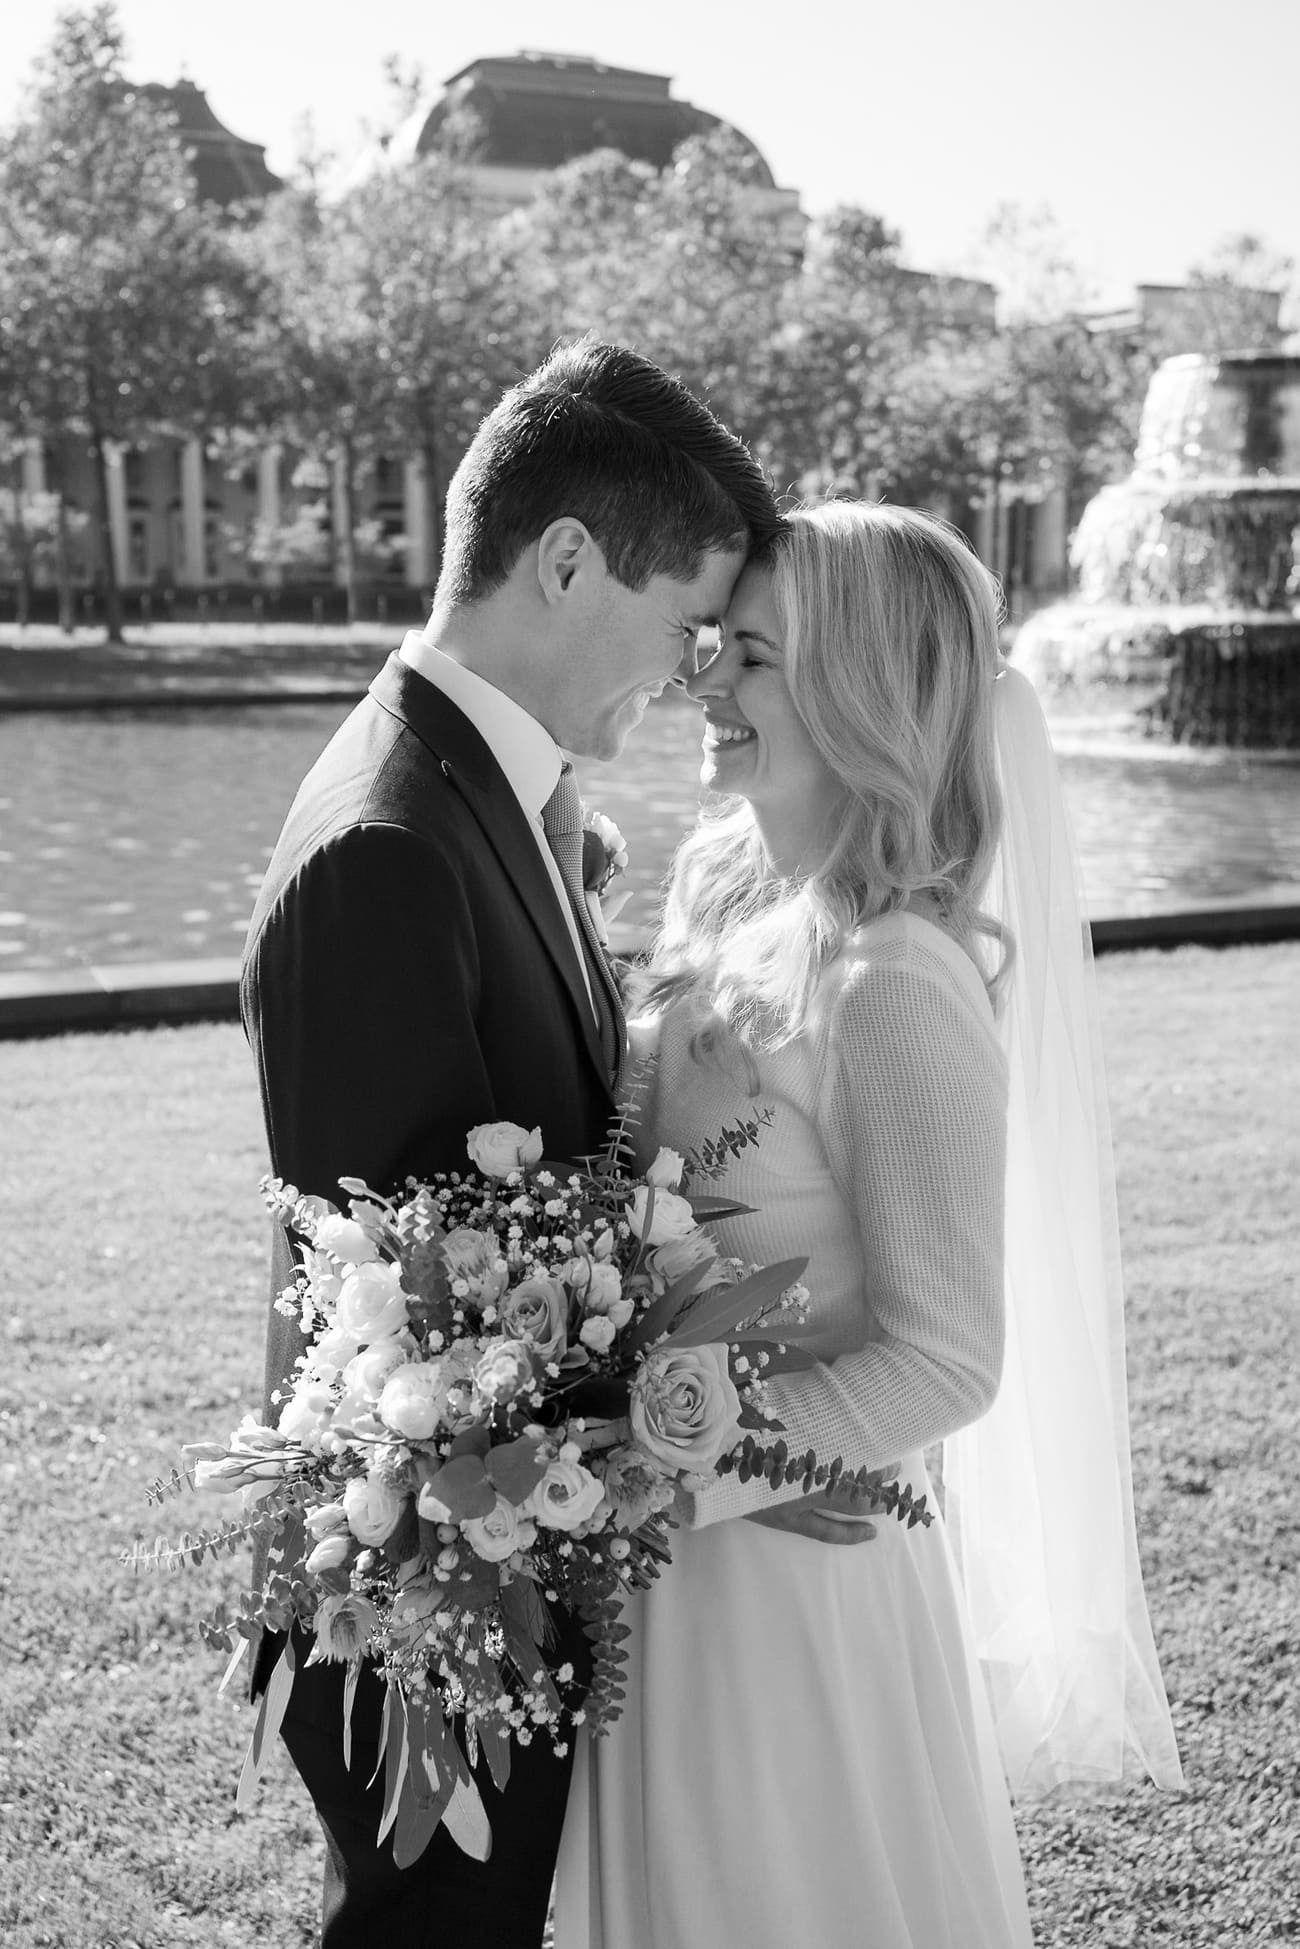 Schwarz-weiß Foto von einem lächelnden Brautpaar im Sonnenschein, die Braut mit einem großen Blumenstrauß und beide lächeln sich glücklich an.